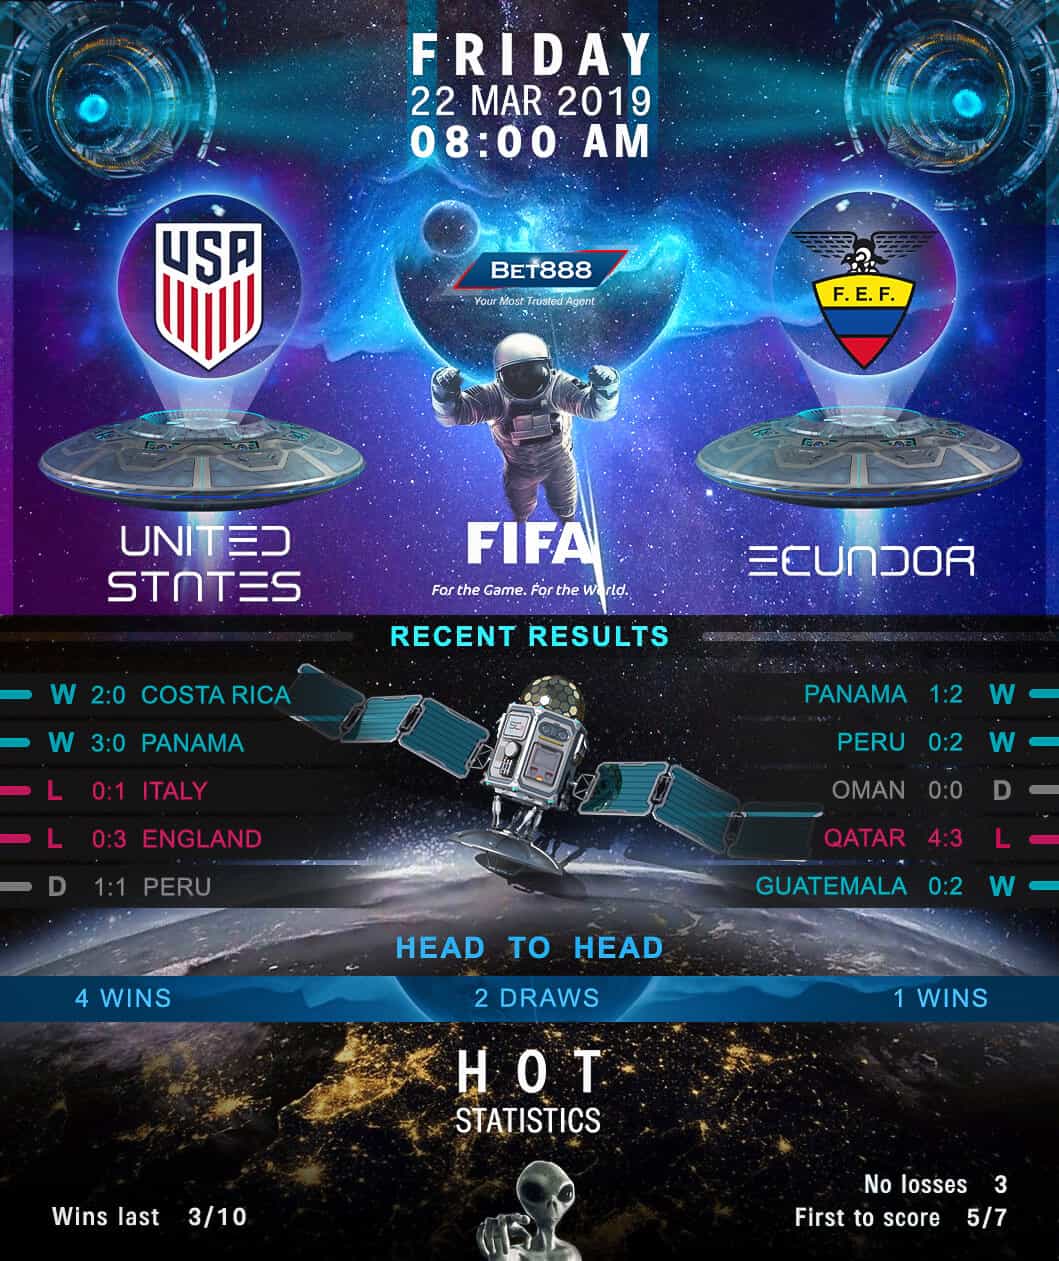 United States vs Ecuador 22/03/19